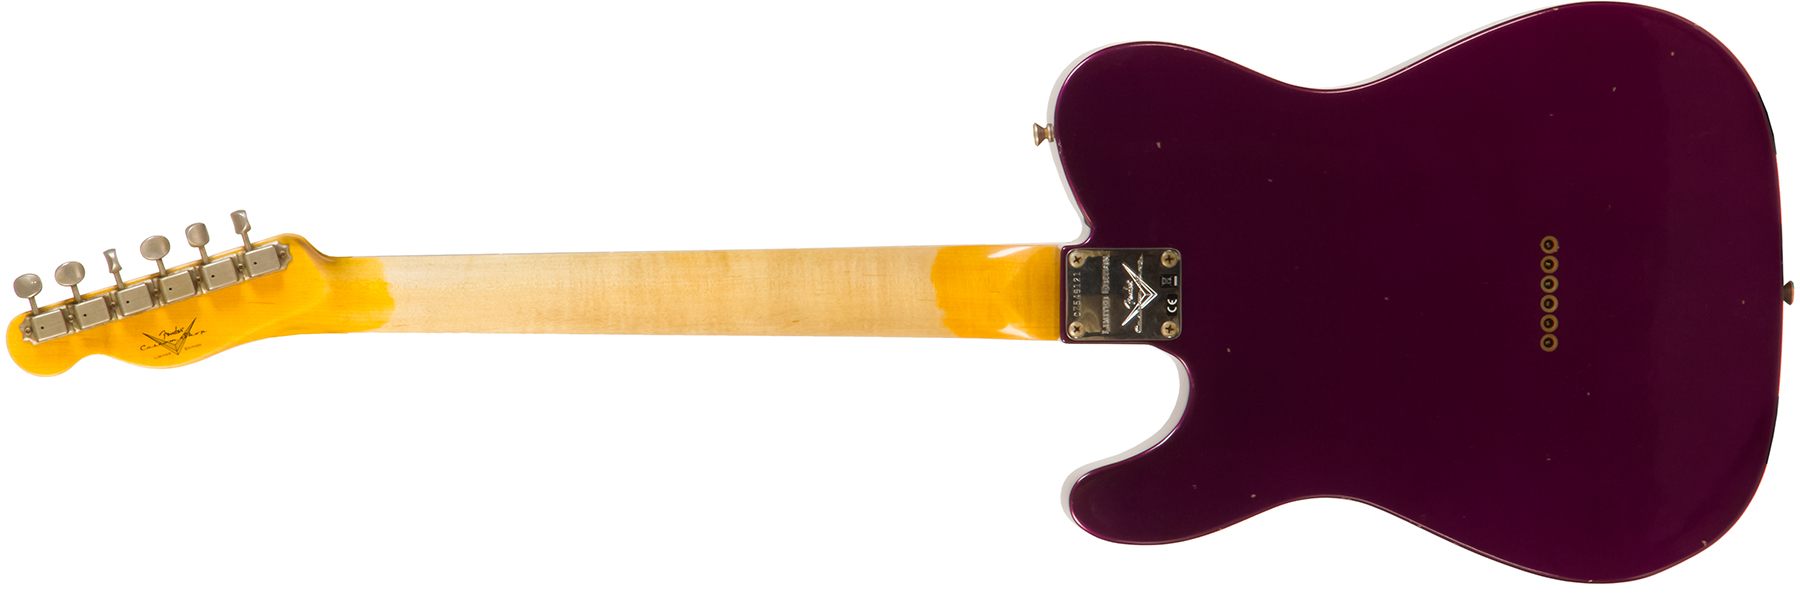 Fender Custom Shop Tele 1960 Rw #cz549121 - Journeyman Relic Purple Metallic - Guitare Électrique Forme Tel - Variation 1